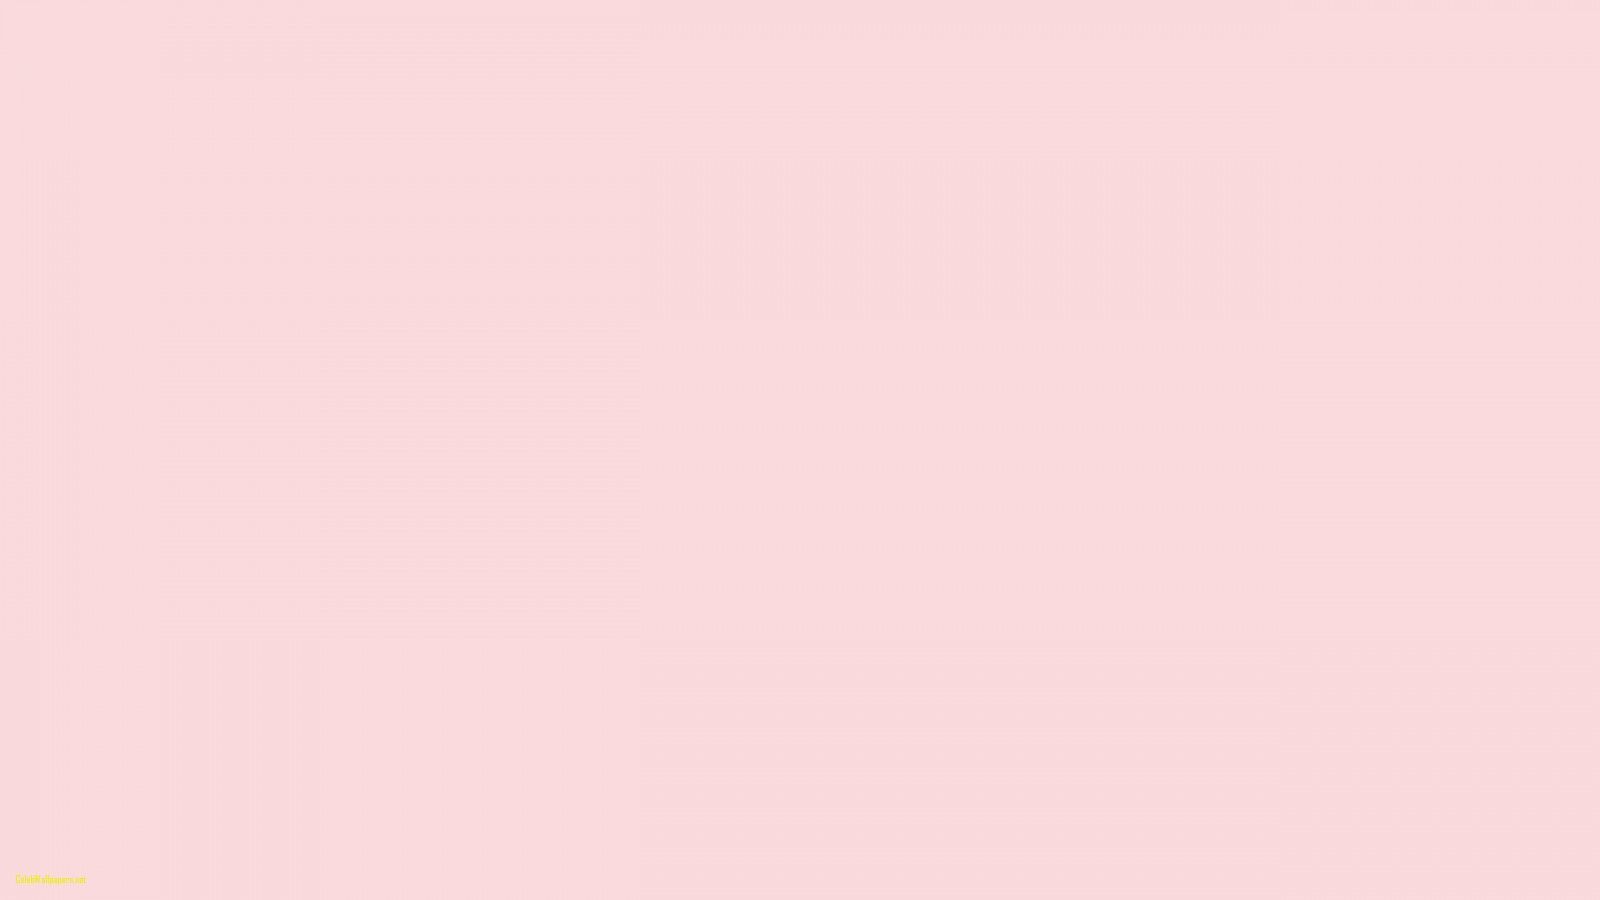 Hình nền hồng nhạt đáng yêu trên WallpaperDog: Nếu bạn đang tìm kiếm một hình nền dễ thương với tông màu hồng nhạt, bạn đã đến đúng nơi! Hình nền hồng nhạt đáng yêu trên WallpaperDog là sự lựa chọn hoàn hảo cho bạn! Với rất nhiều lựa chọn hình nền đẹp, bạn sẽ chắc chắn tìm thấy một tấm hình nền đáng yêu để trang trí màn hình điện thoại của mình.